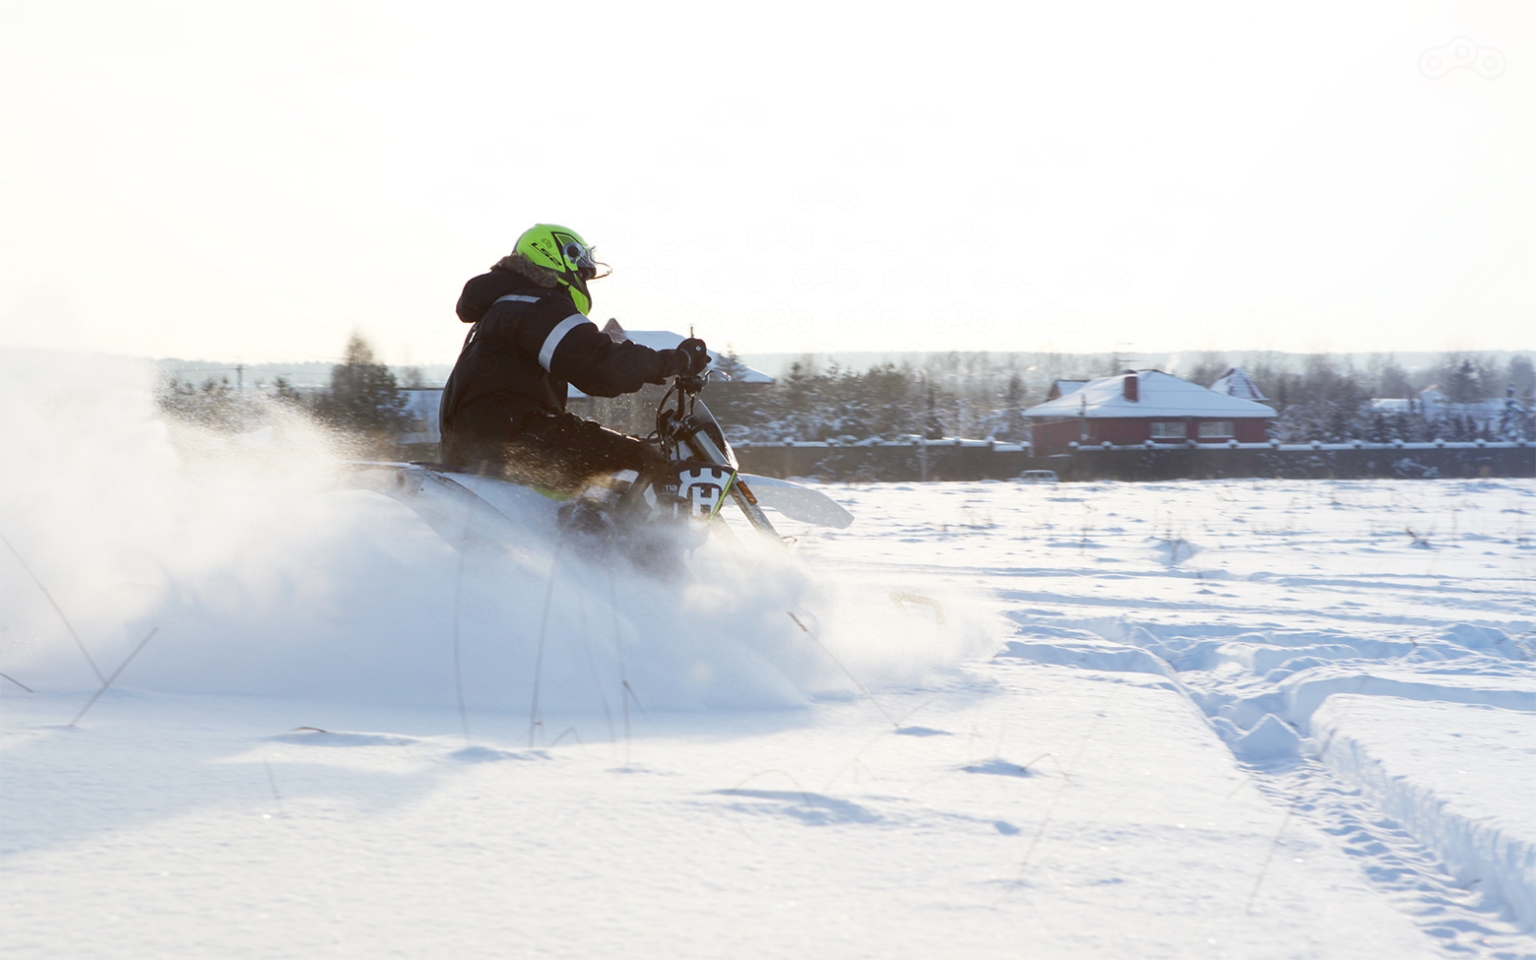 Повороты в пухляке даются легче, чем на обычном мотоцикле, жаль лишь высоты подножек недостаточно, чтобы уберечь ноги от затопления снегом